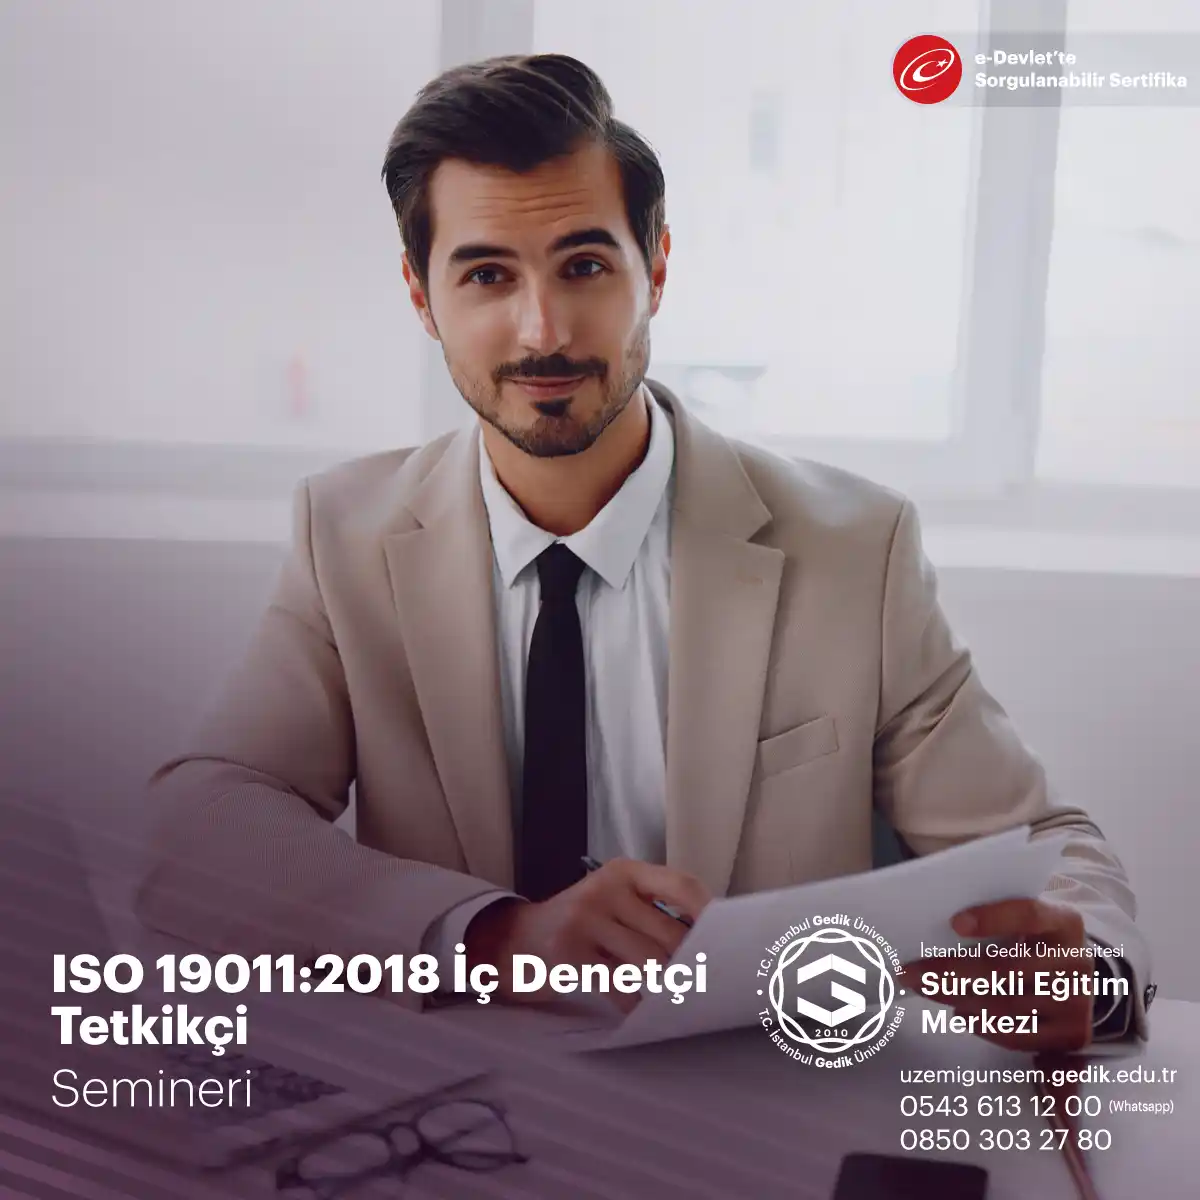 Kurumların ISO standartlarına uyumu ve iyileştirme süreçlerini yönetmek için seminer: Katılımcılara yöntem ve uygulamaların anlatımını gerçekleştirir.